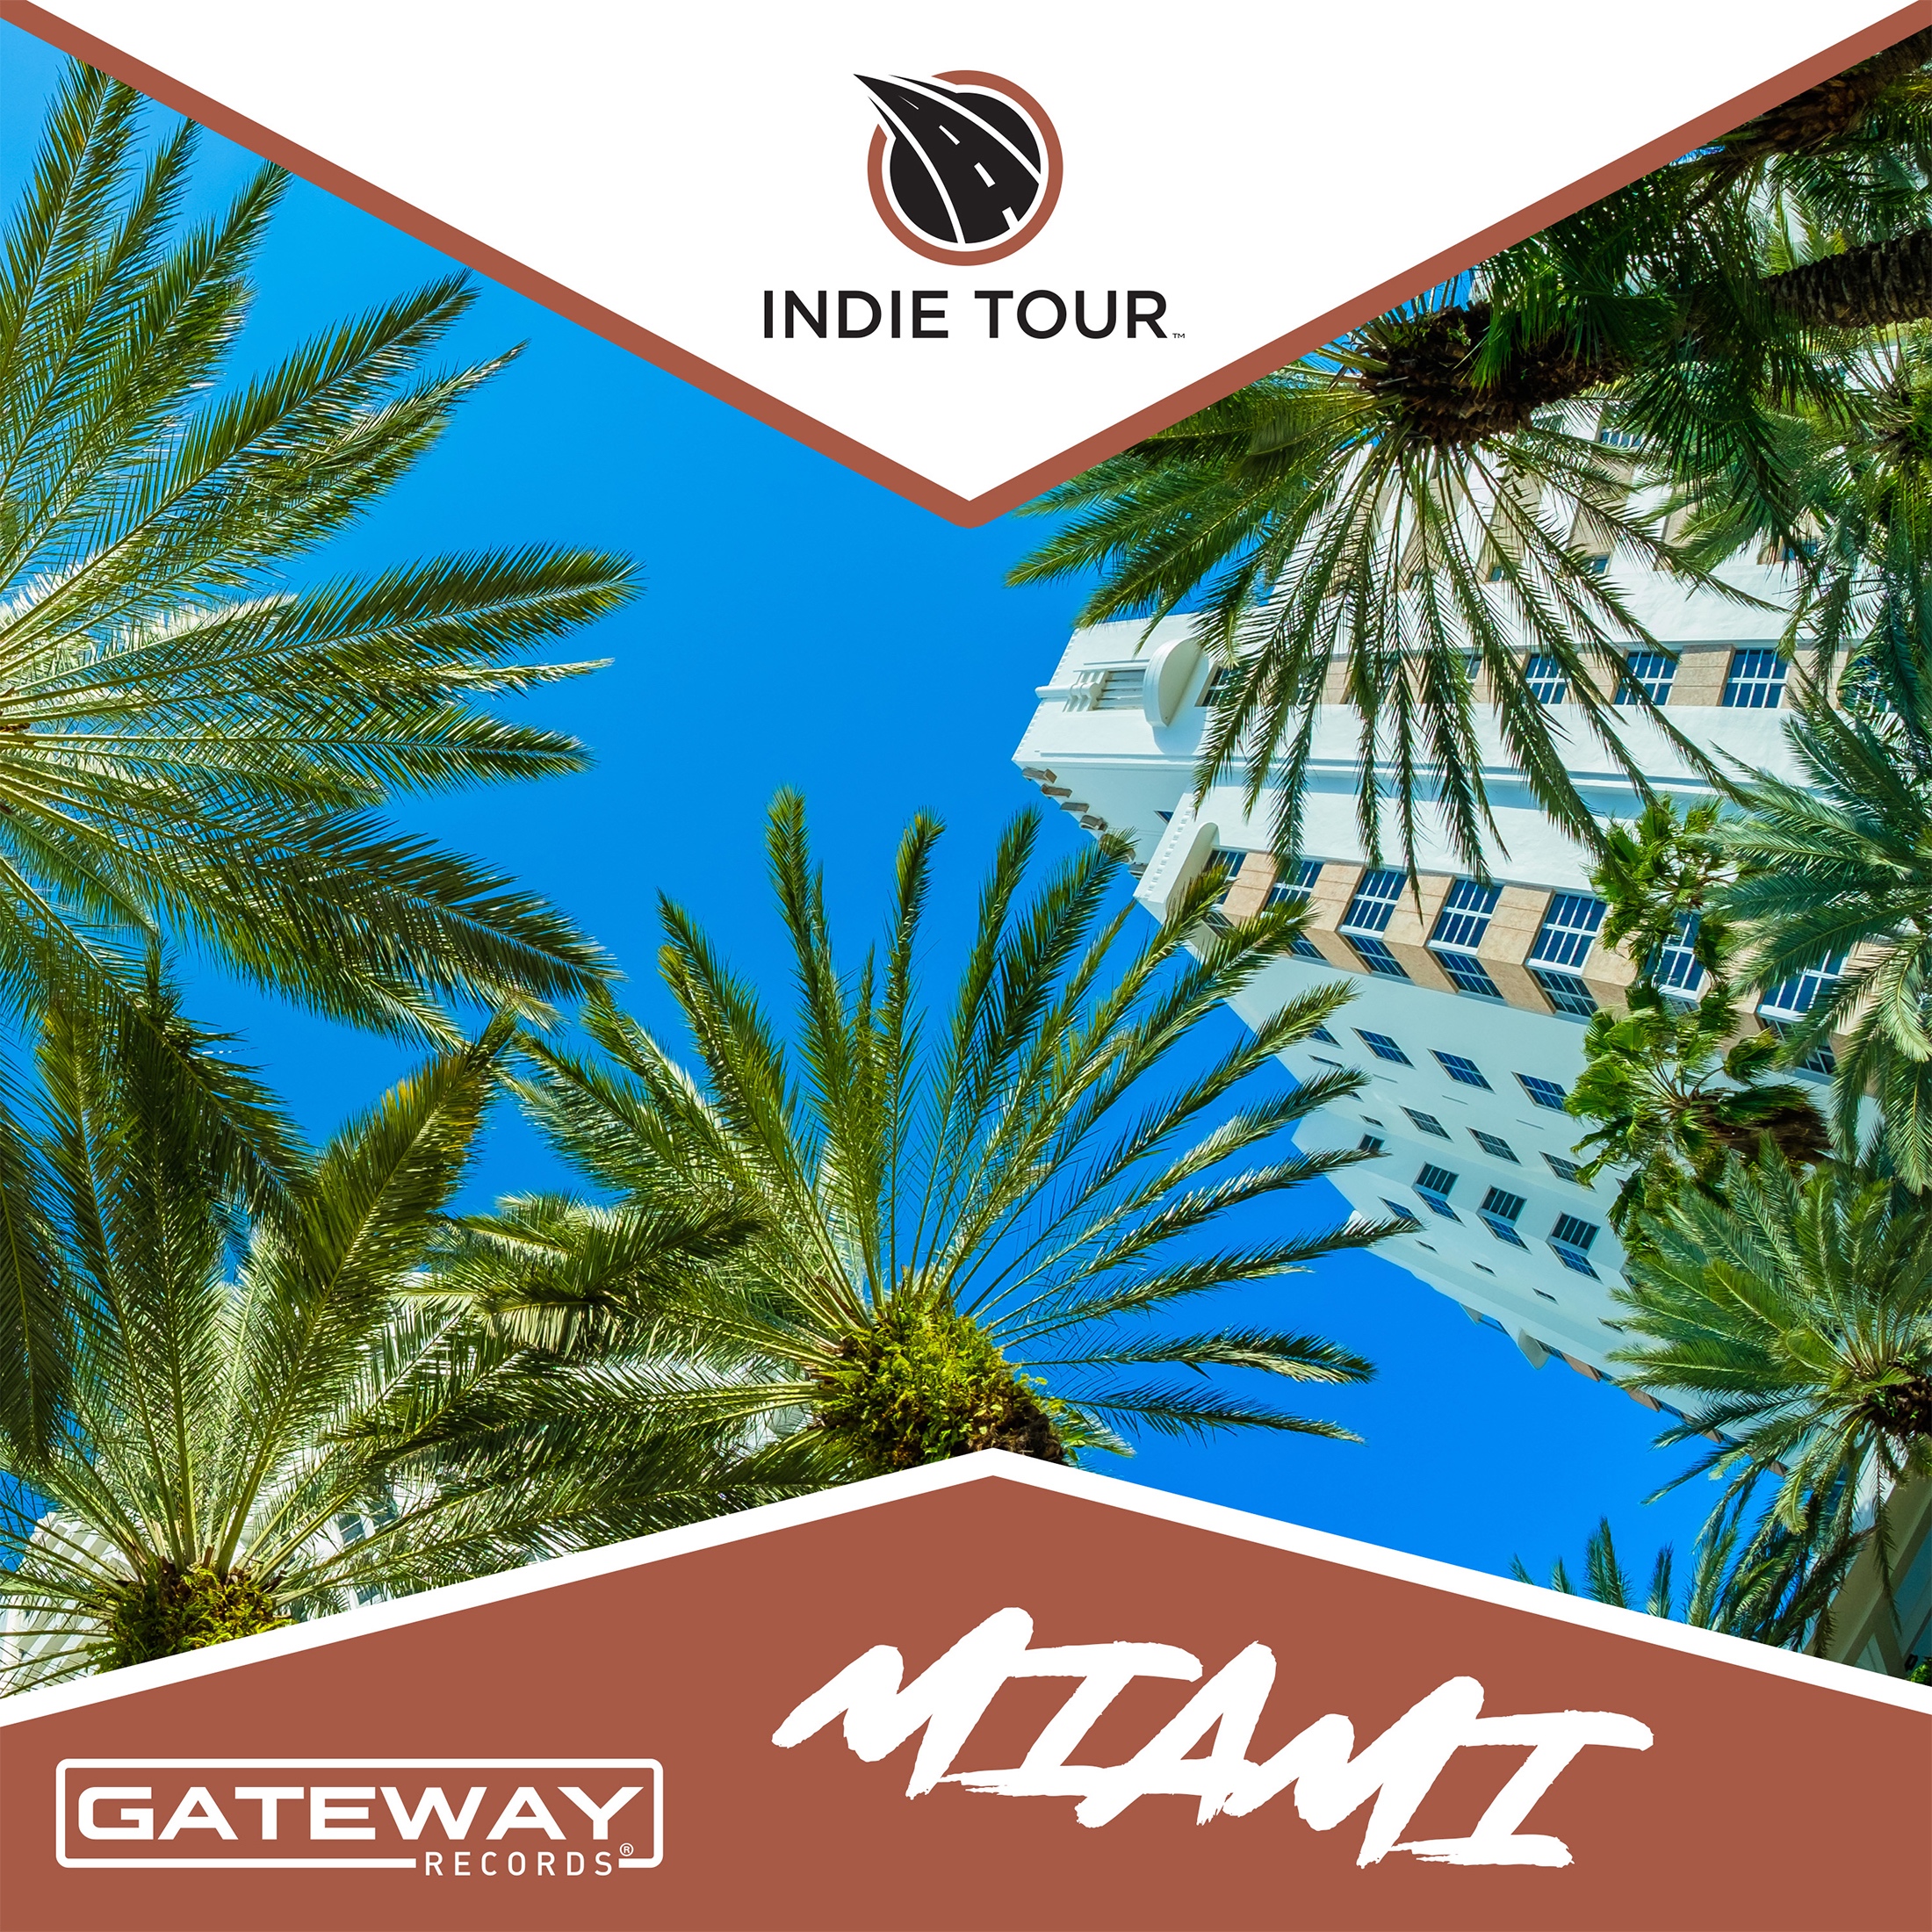 Album cover image for upcoming Indie Tour: Miami Album